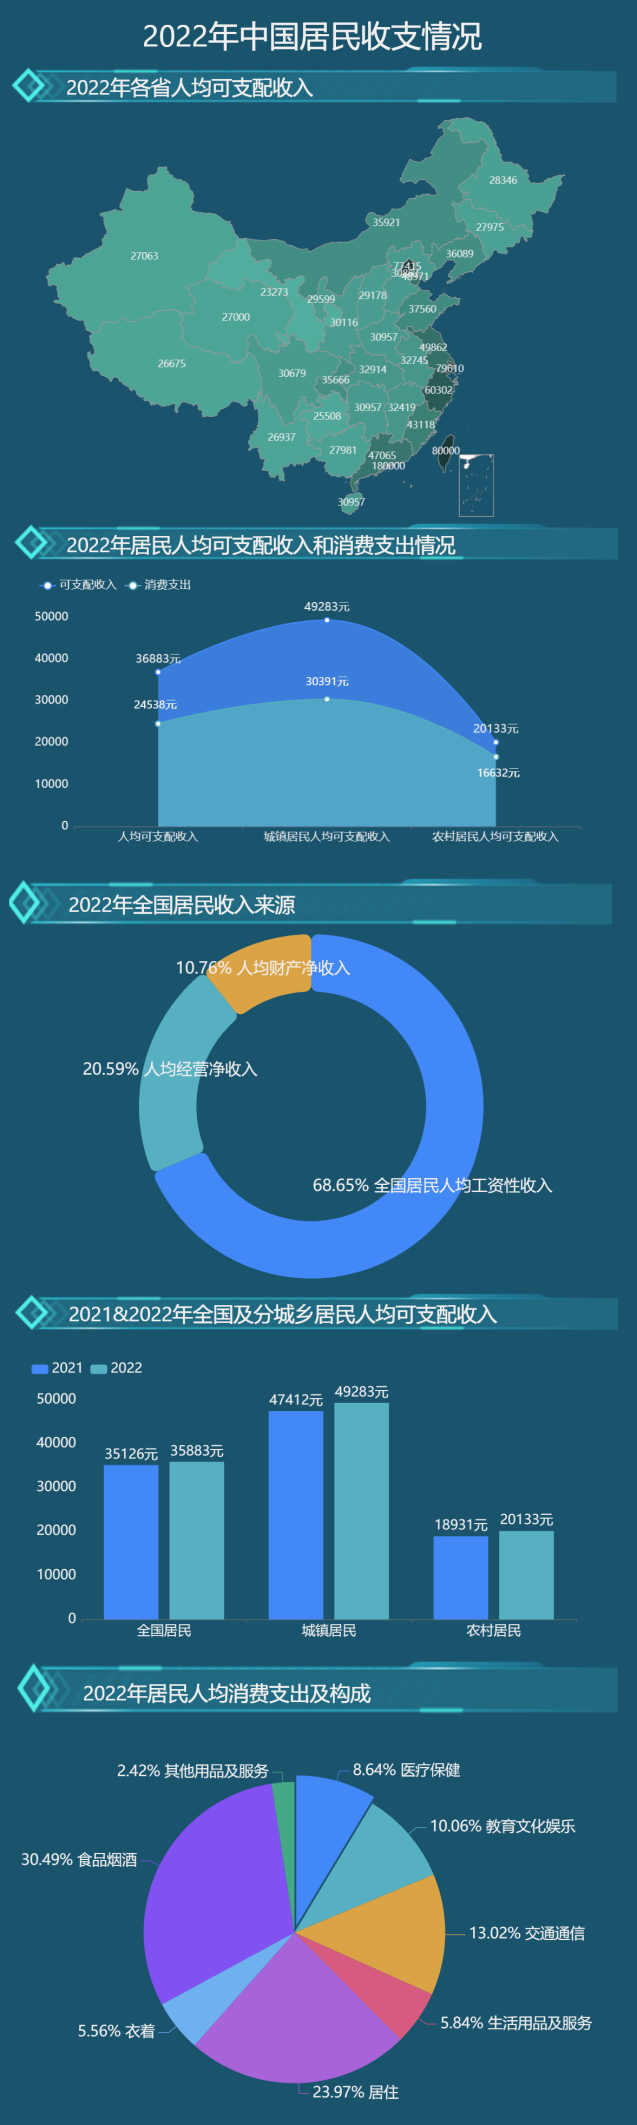 2022年中国居民收支情况-迪赛智慧数